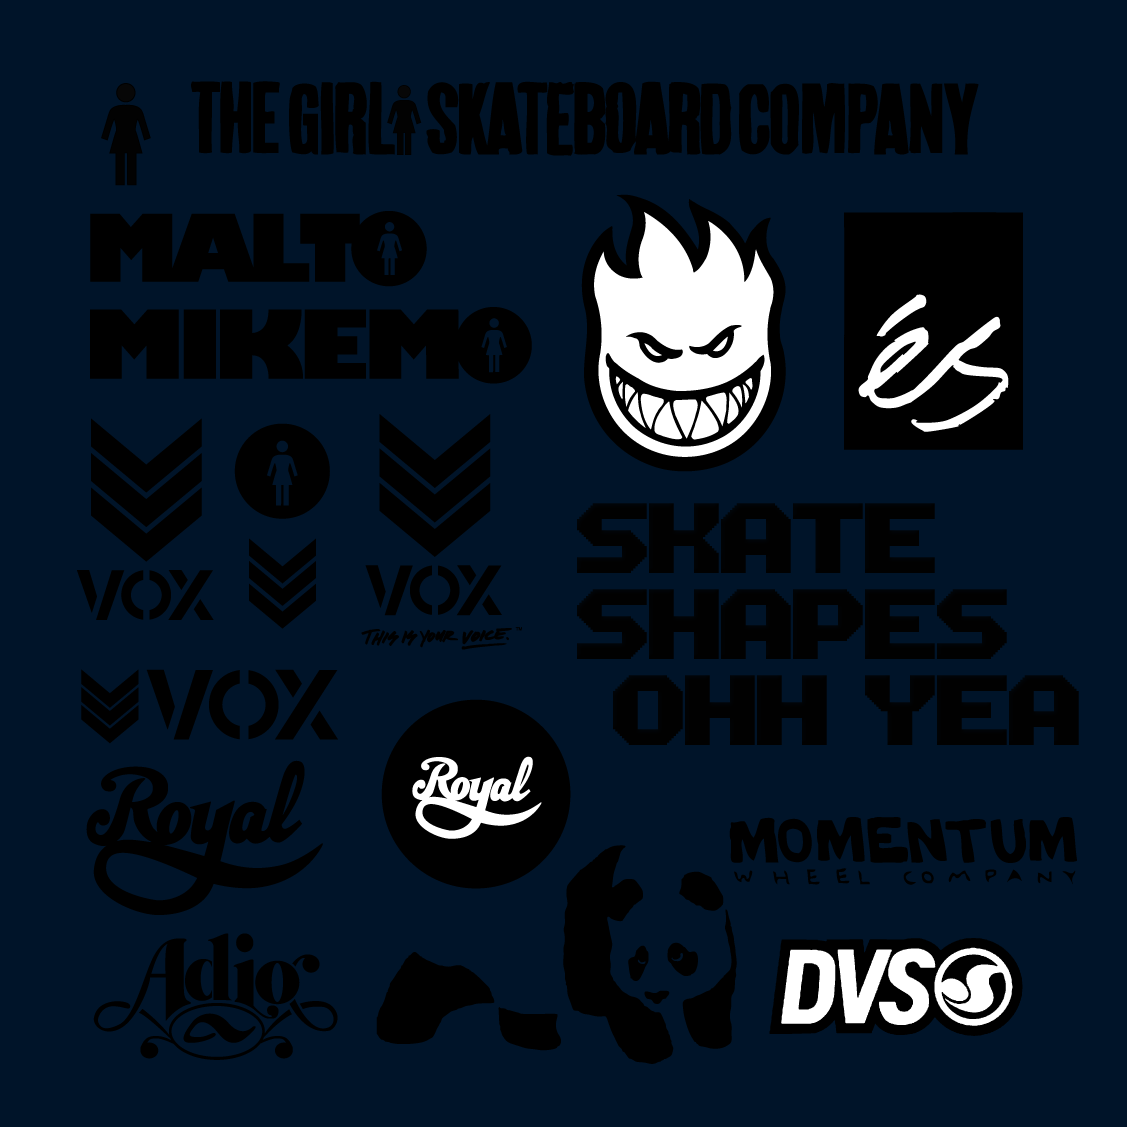 Skateboarding Logos Wallpapers My favorite skate logos by 1127x1127